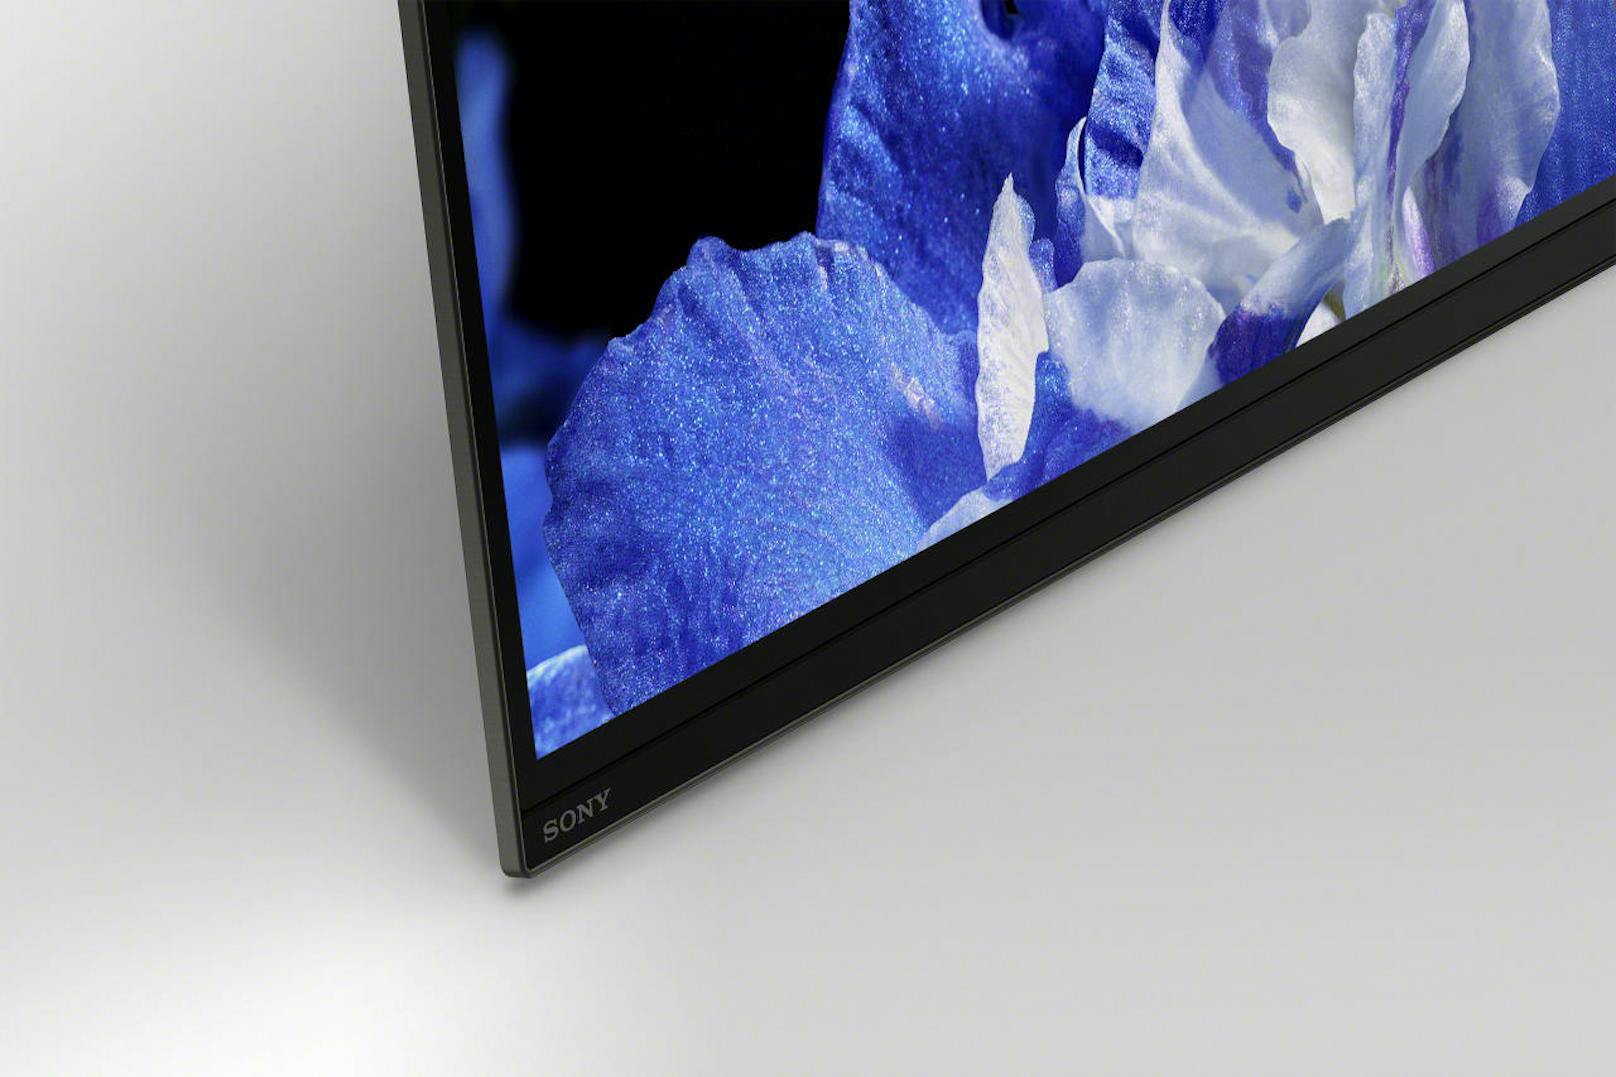 Entsprechend minimal erscheint auch das Sony-Logo in der Ecke des TV-Geräts und sogar die kleine LED-Anzeige (für Standby und Co.) kann optional abgedreht werden, um den Eindruck perfekt zu machen.